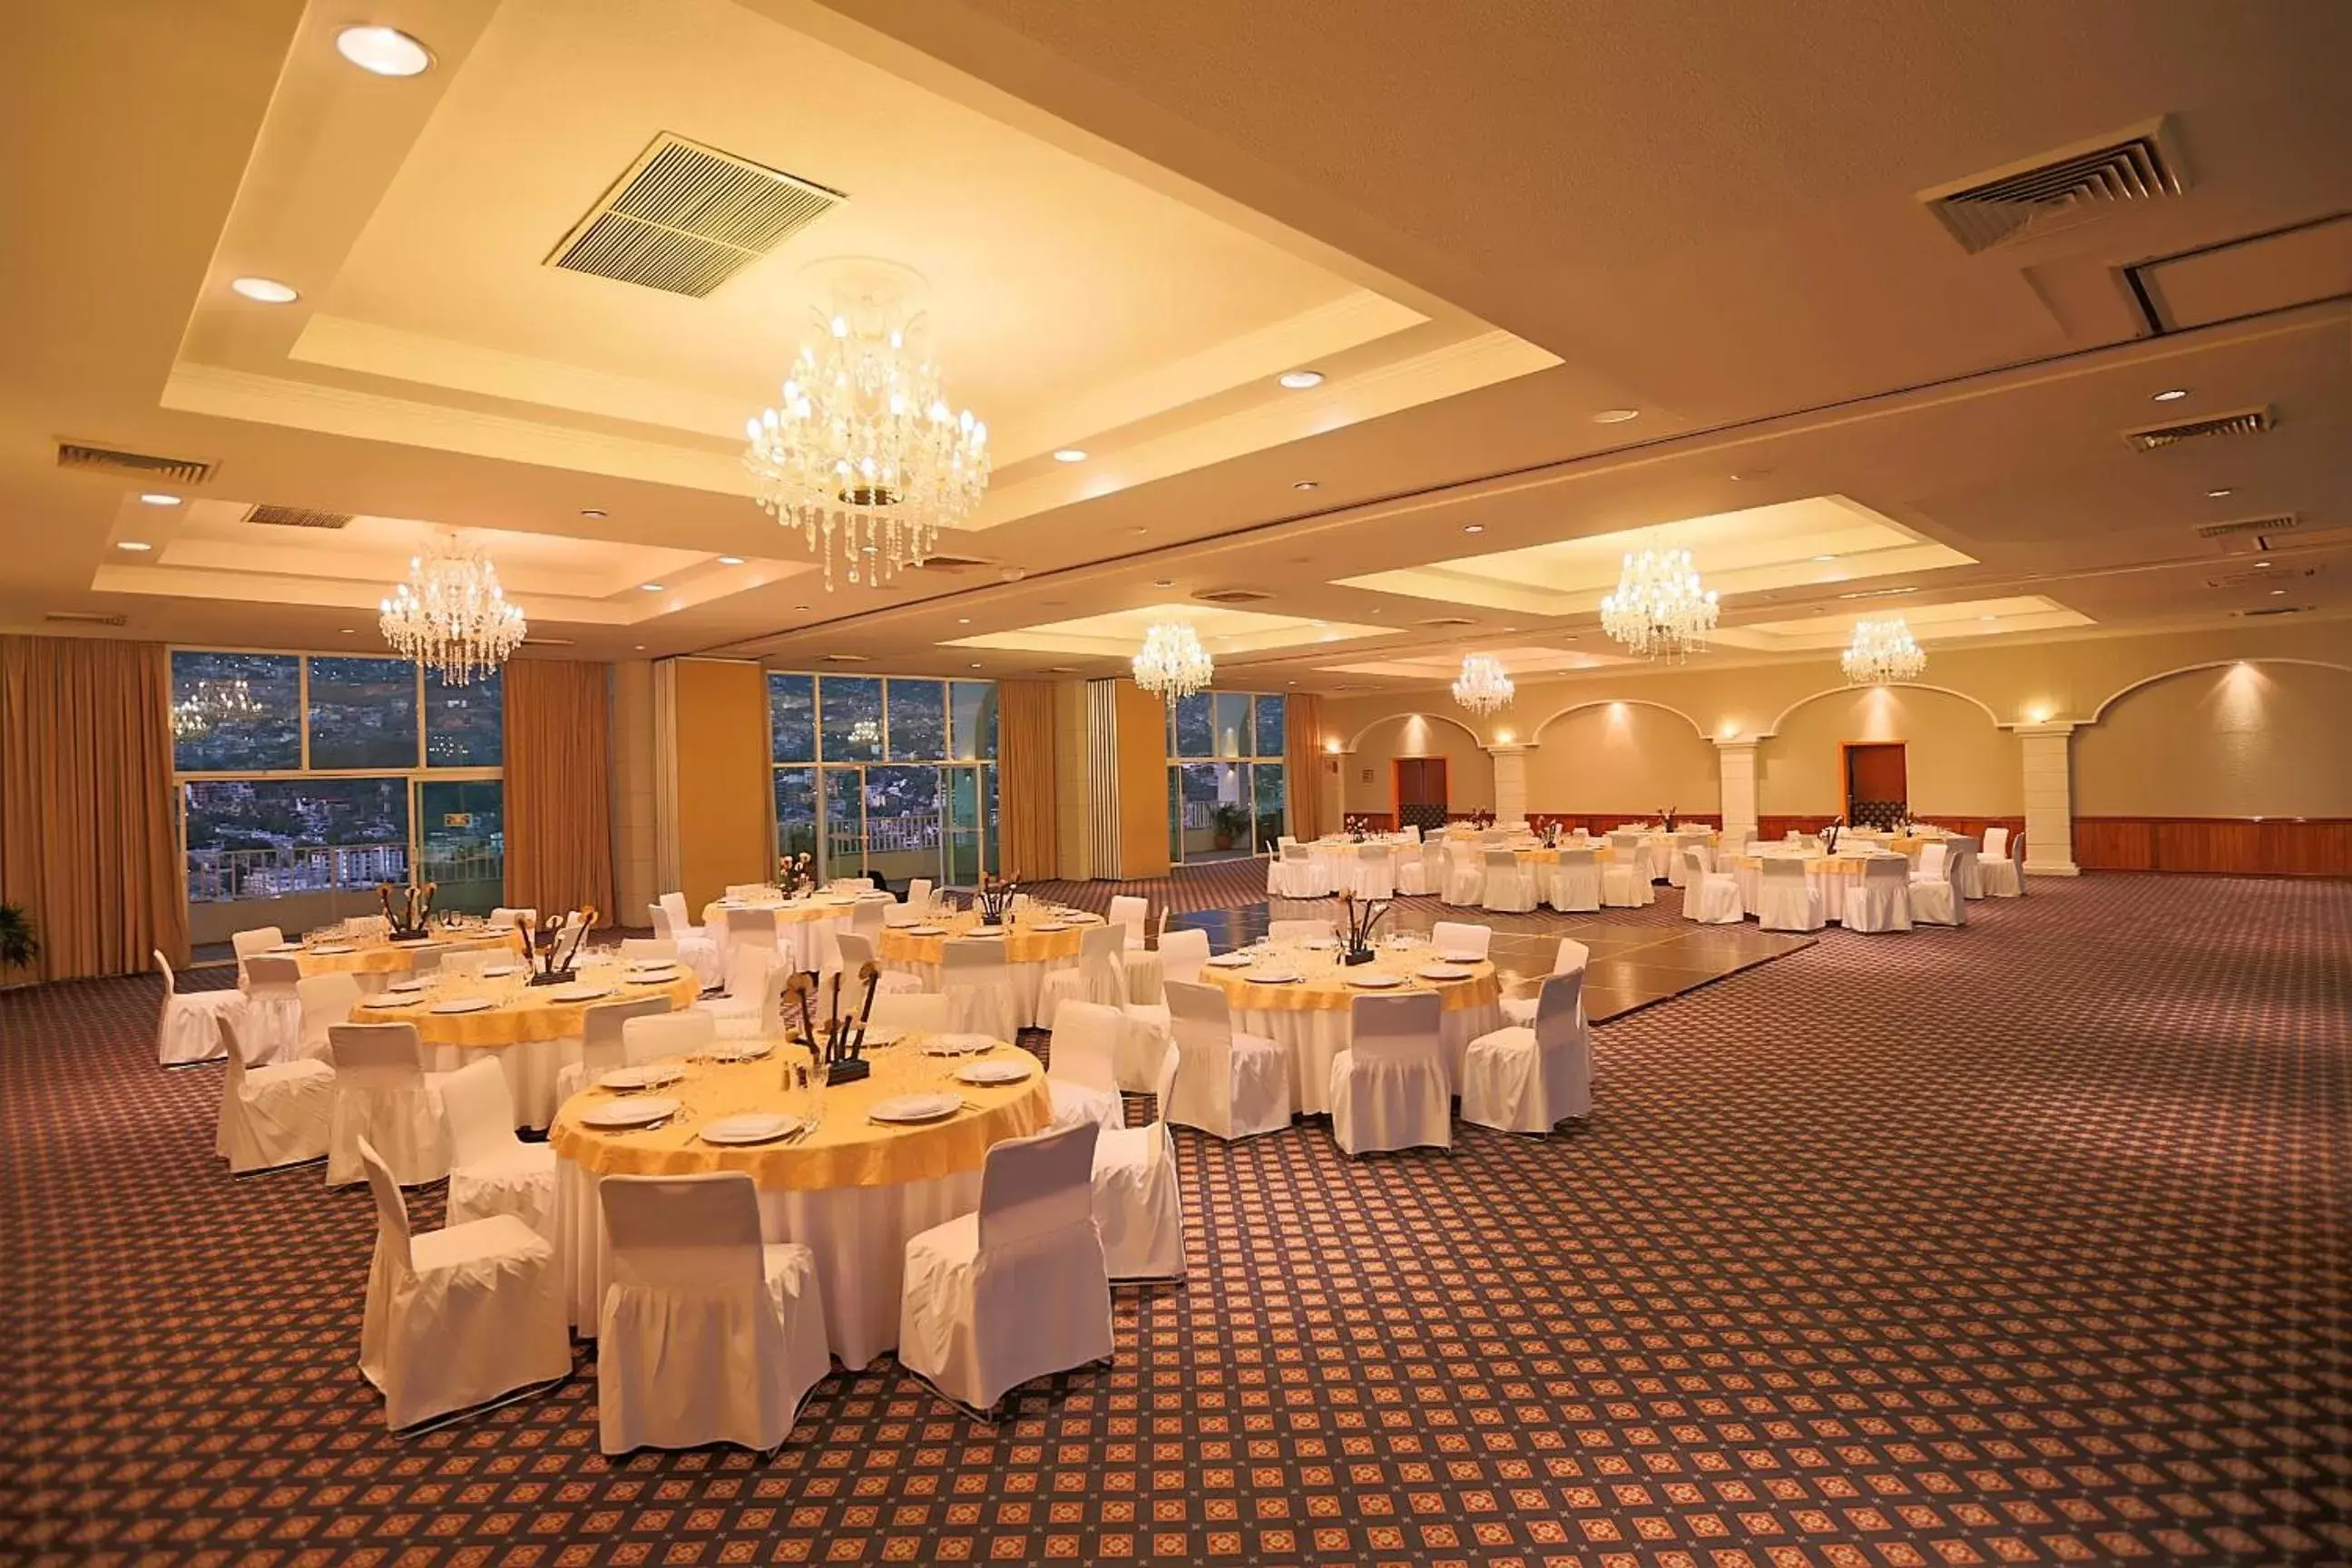 Banquet/Function facilities, Banquet Facilities in Krystal Beach Acapulco